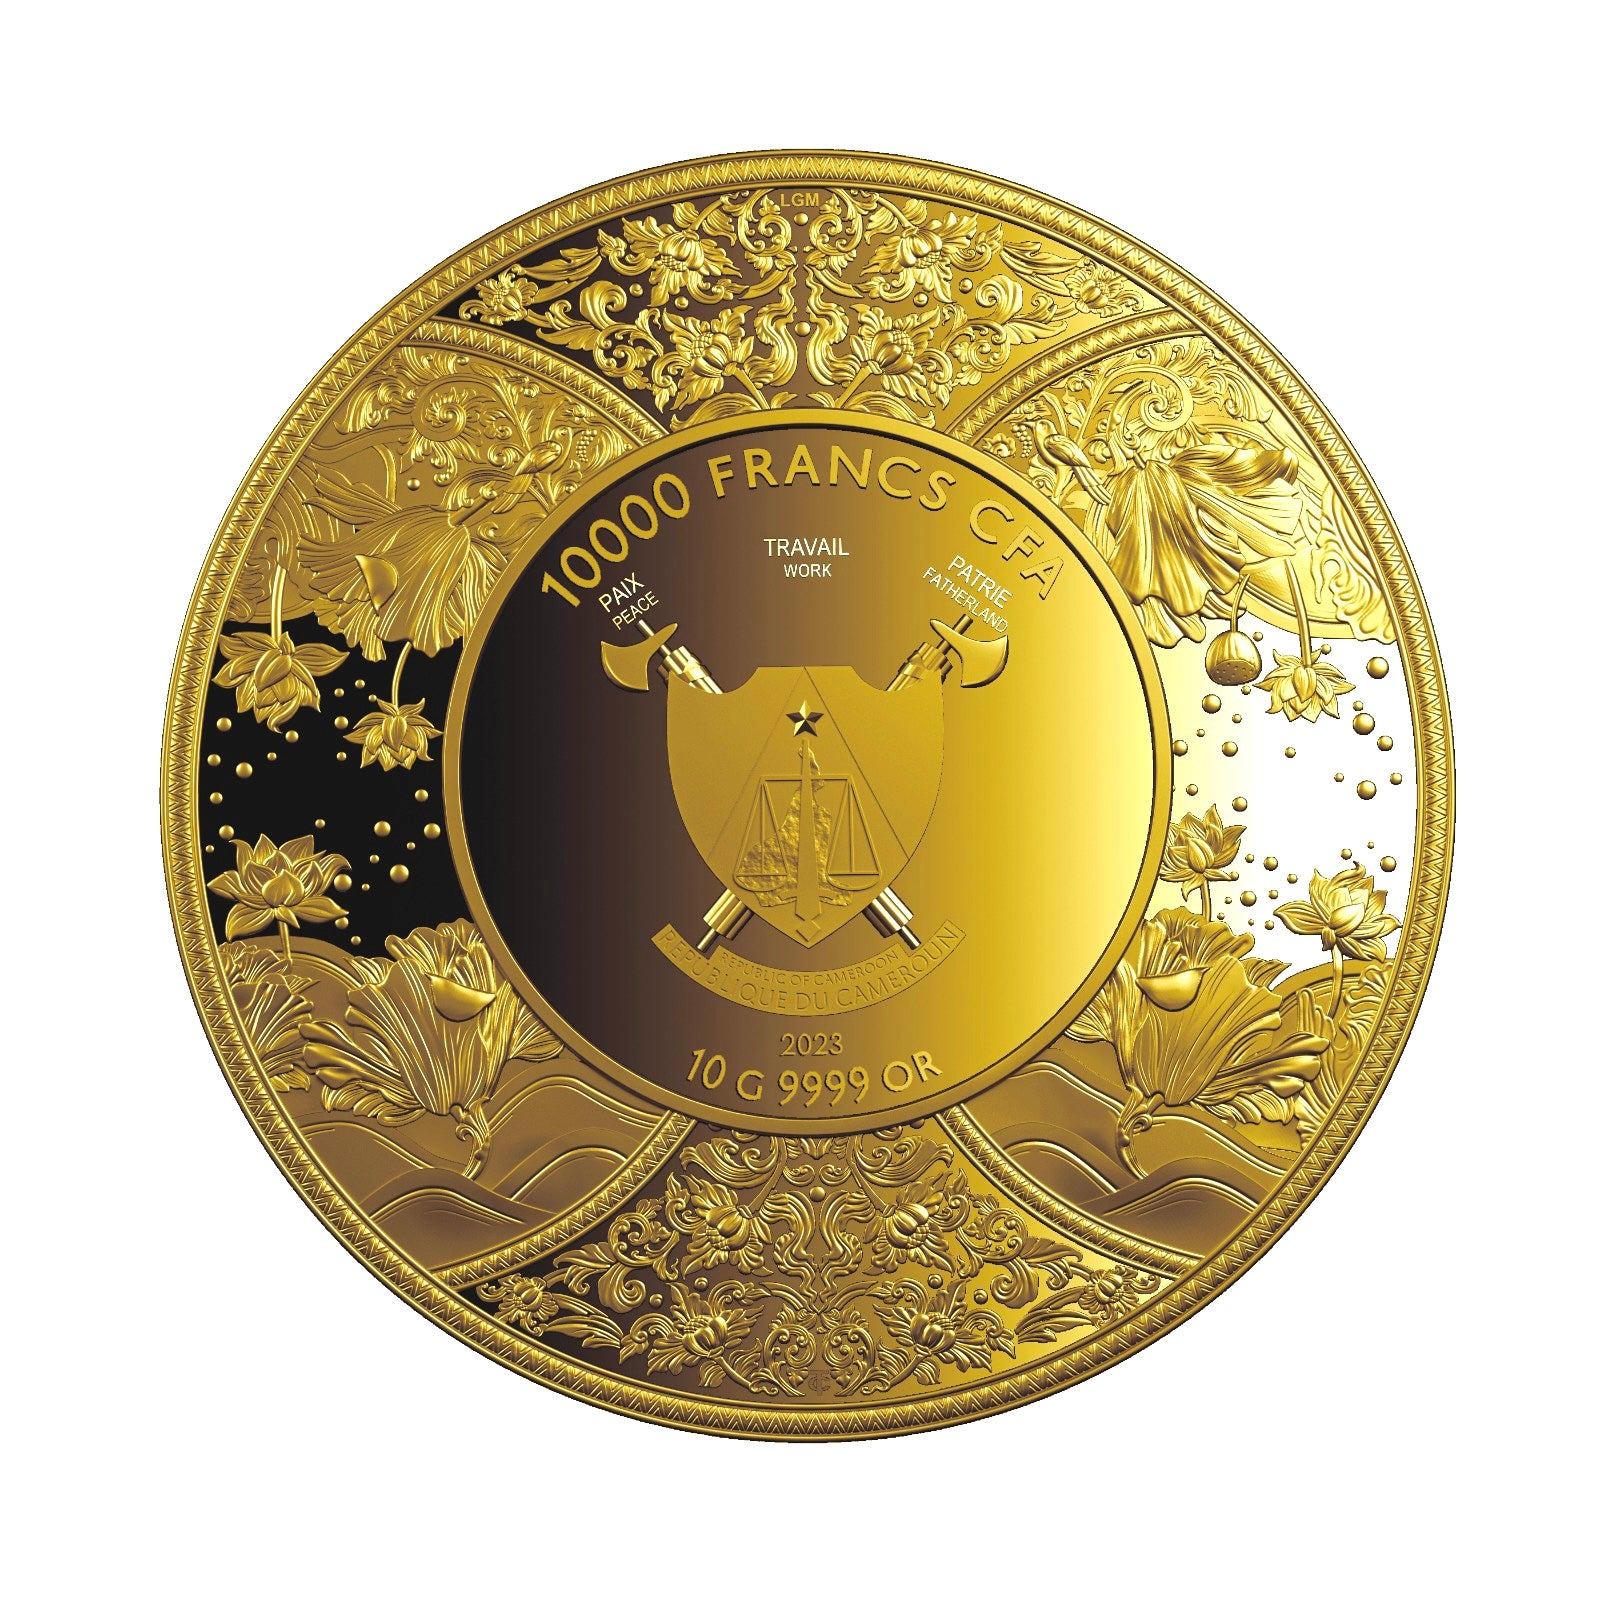 Durga Gold 10 g Finegold Bullion Coin Obverse